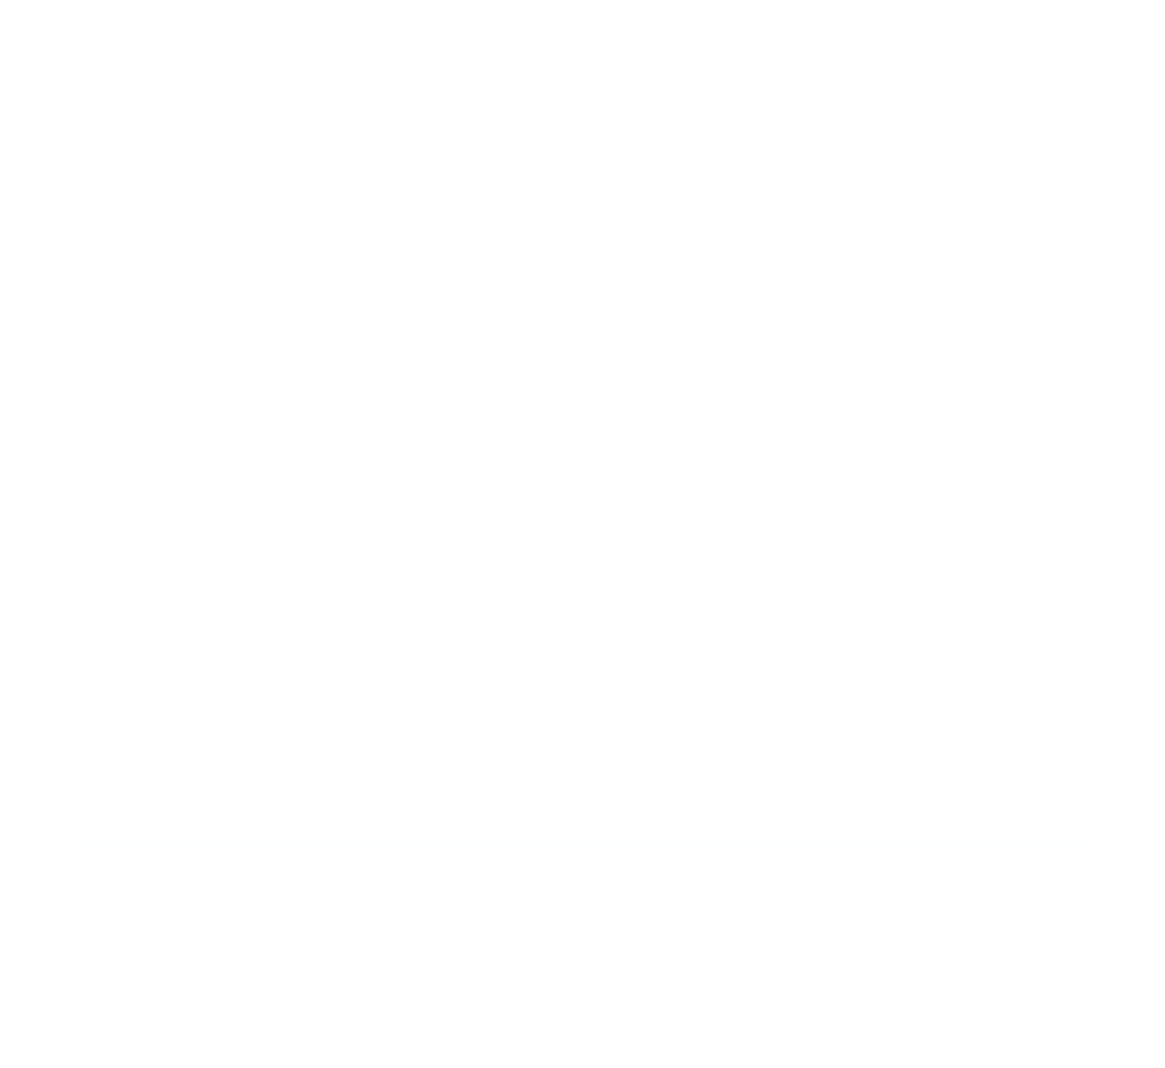 WALLY FARMS